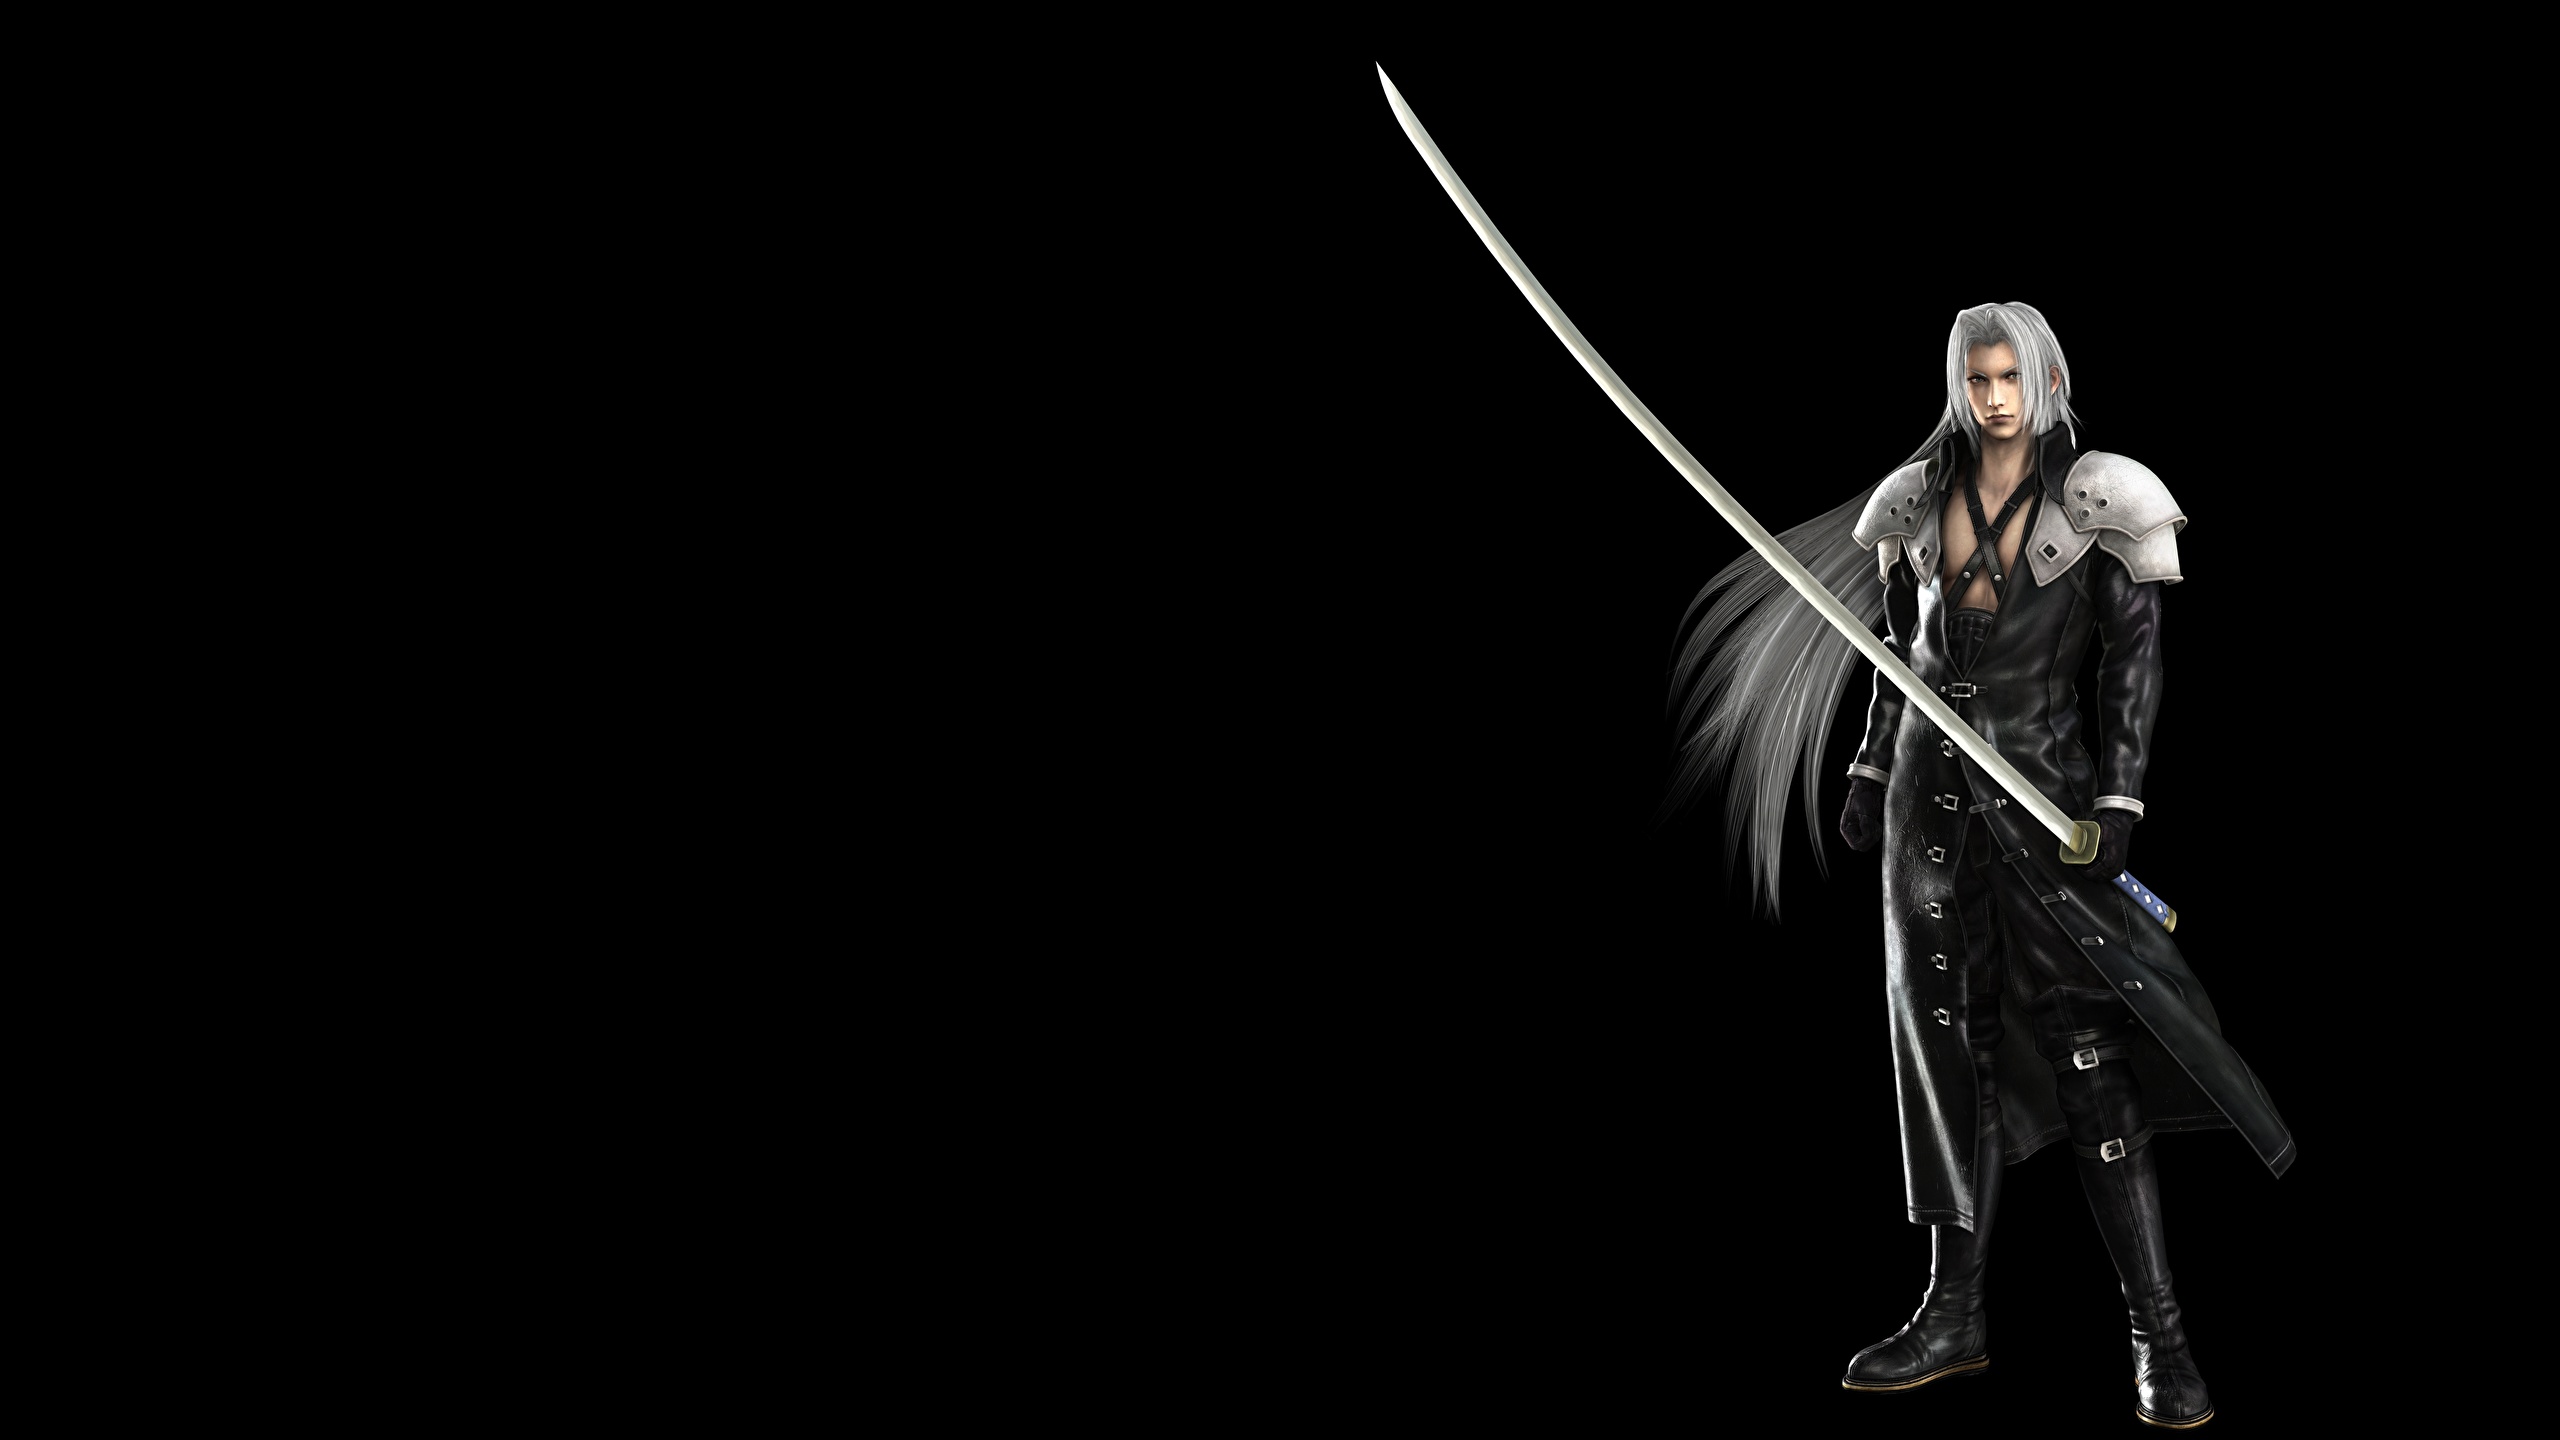 壁紙 2560x1440 ウォリアーズ ファイナルファンタジー Sephiroth サーベル 黒色背景 ゲーム 3dグラフィックス ダウンロード 写真